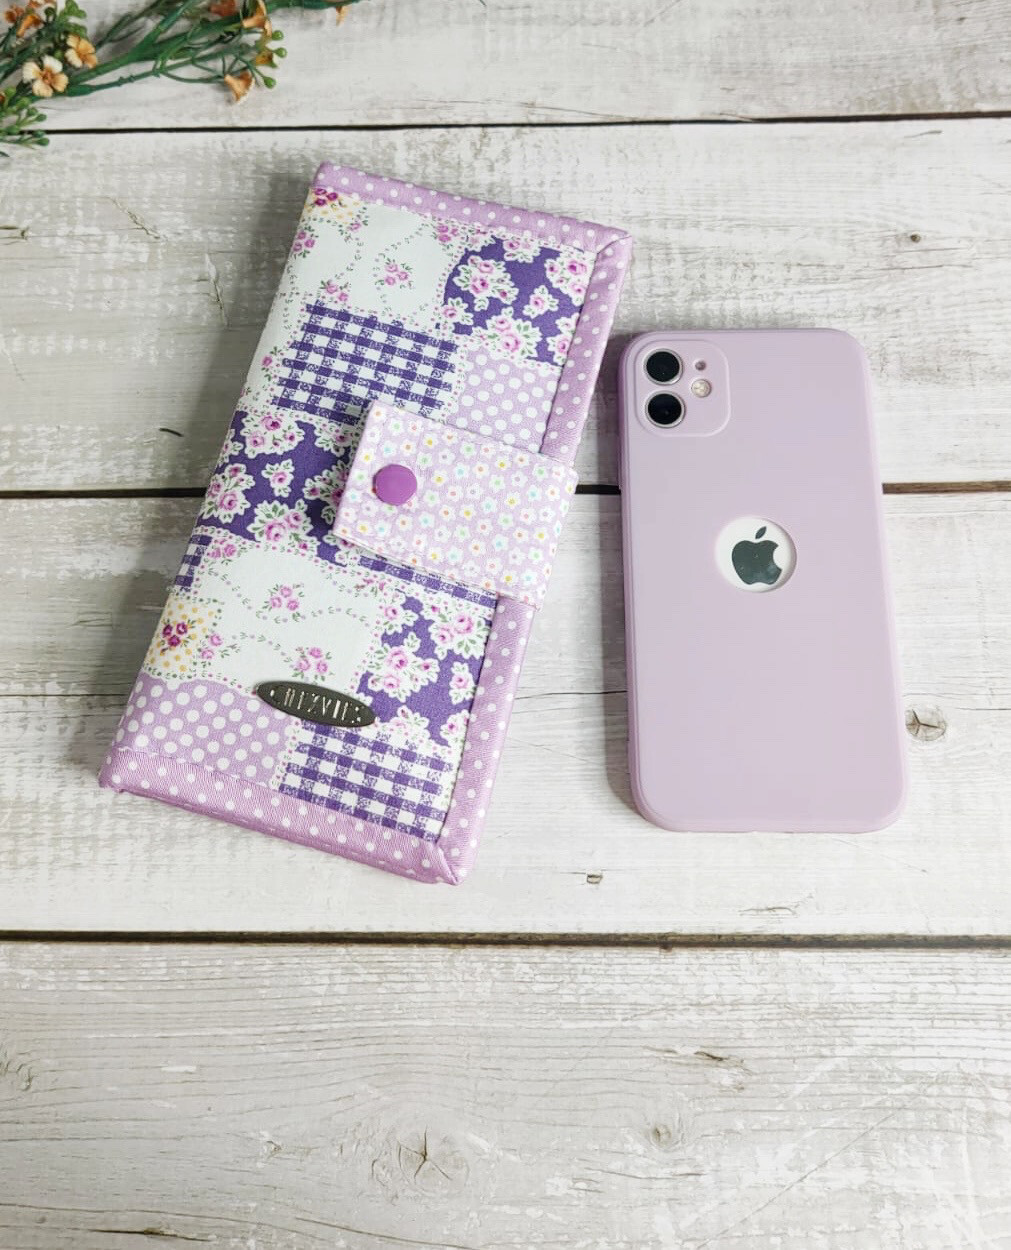 Purple Bifold Wallet - Patchwork Design